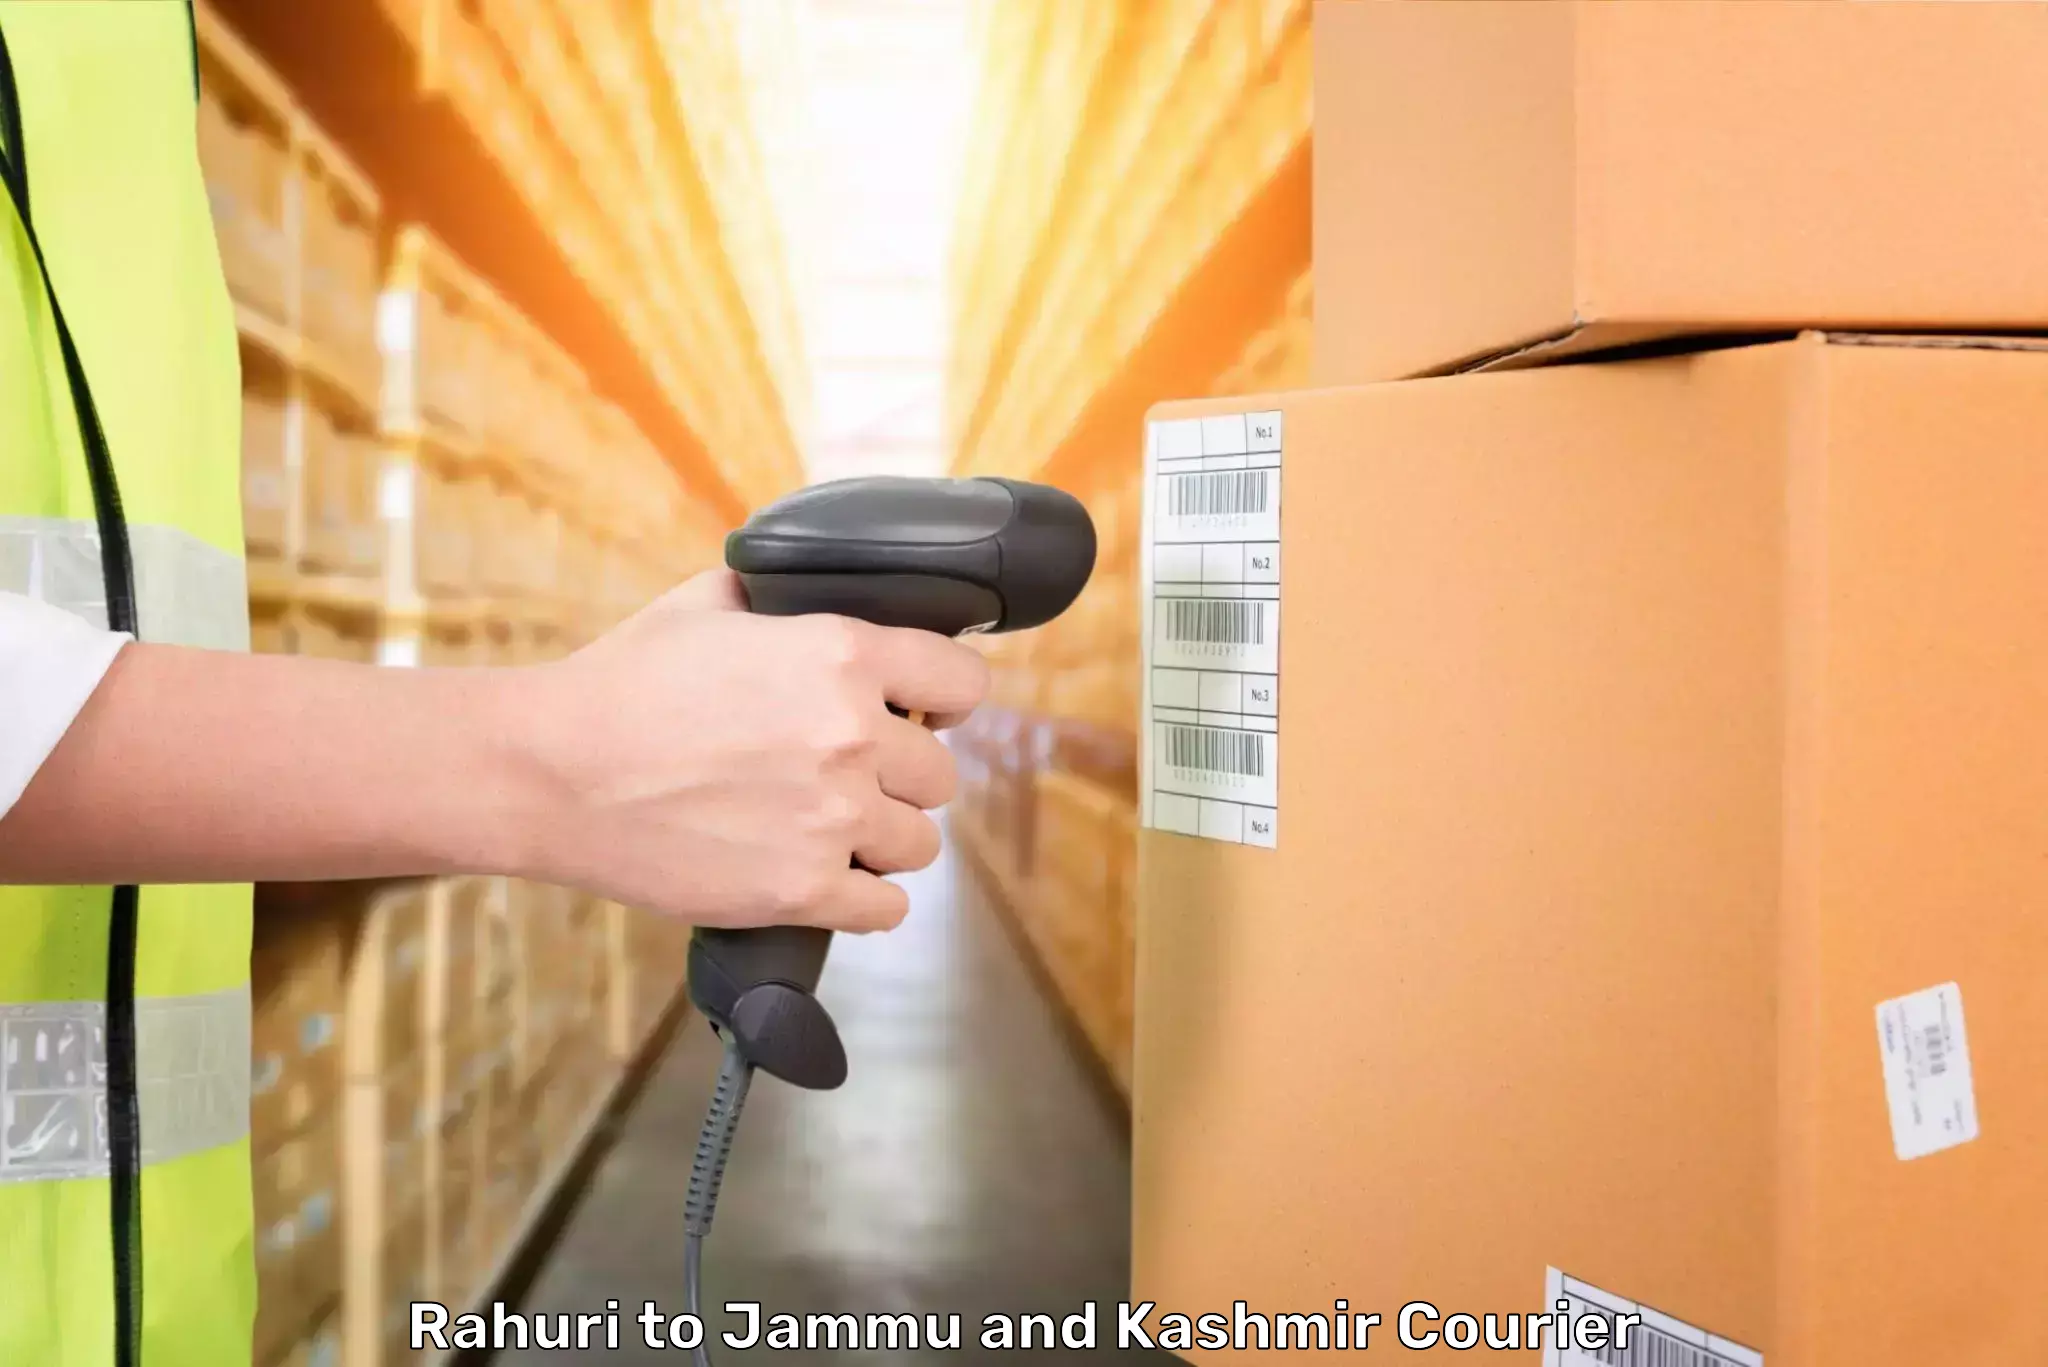 Baggage shipping experts Rahuri to Samba